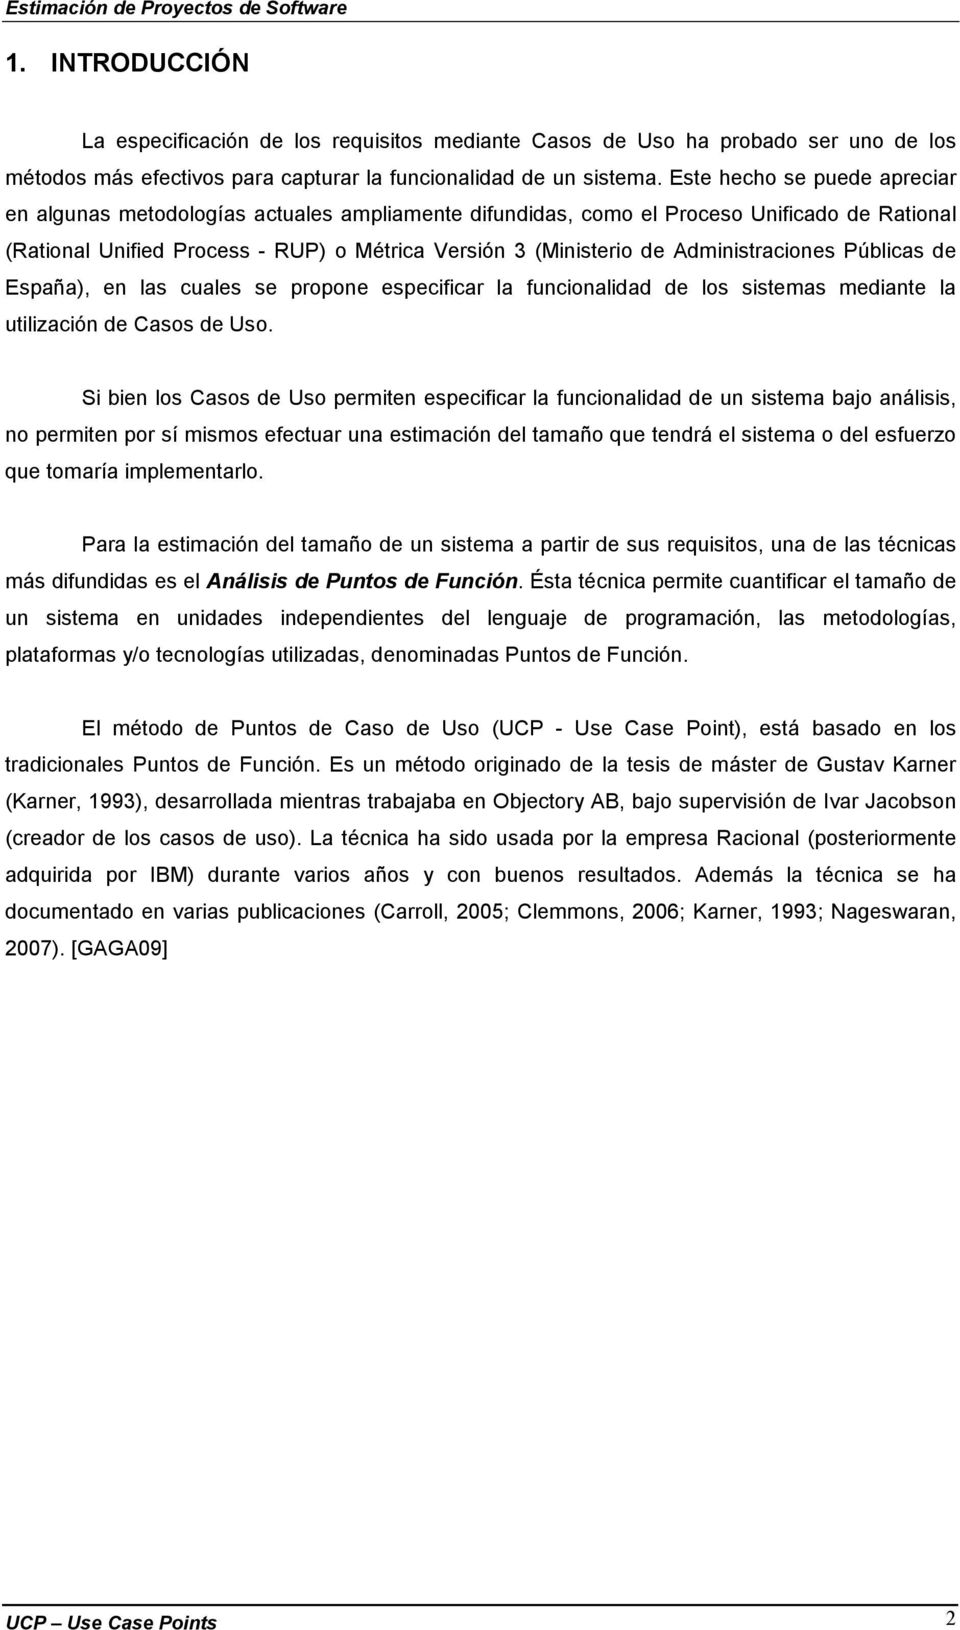 Administraciones Públicas de España), en las cuales se propone especificar la funcionalidad de los sistemas mediante la utilización de Casos de Uso.